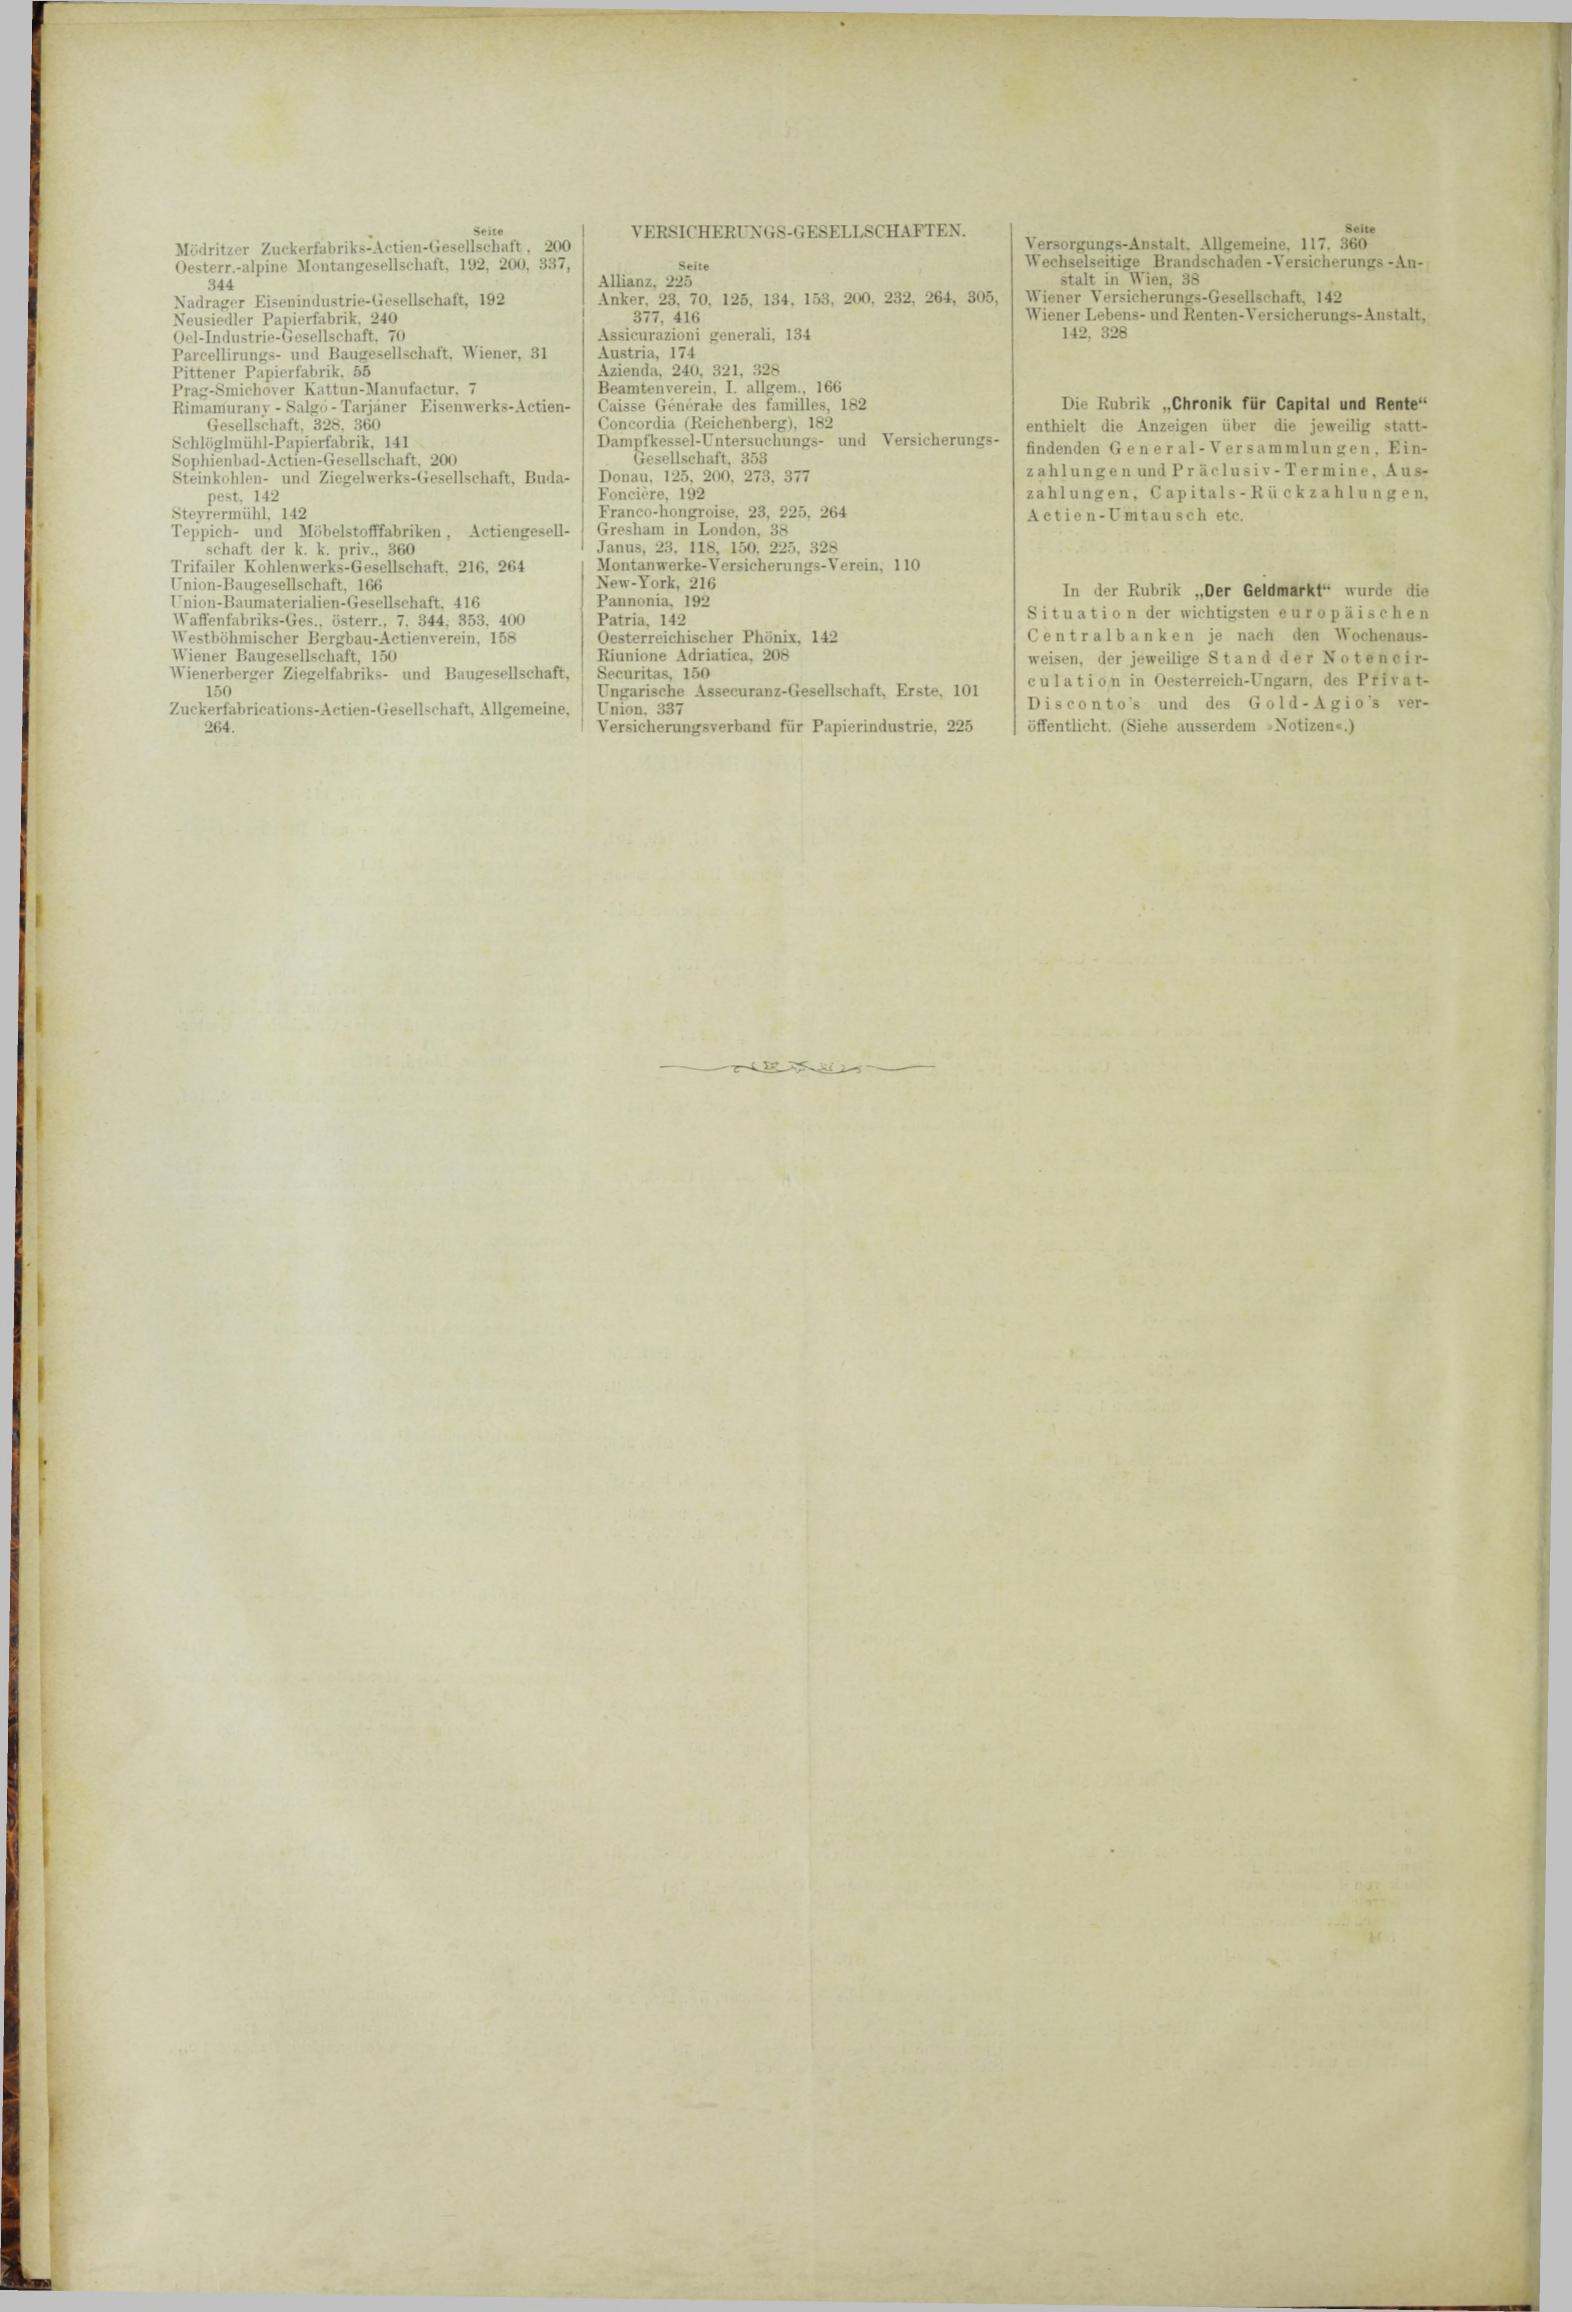 Der Tresor 11.10.1883 - Seite 12